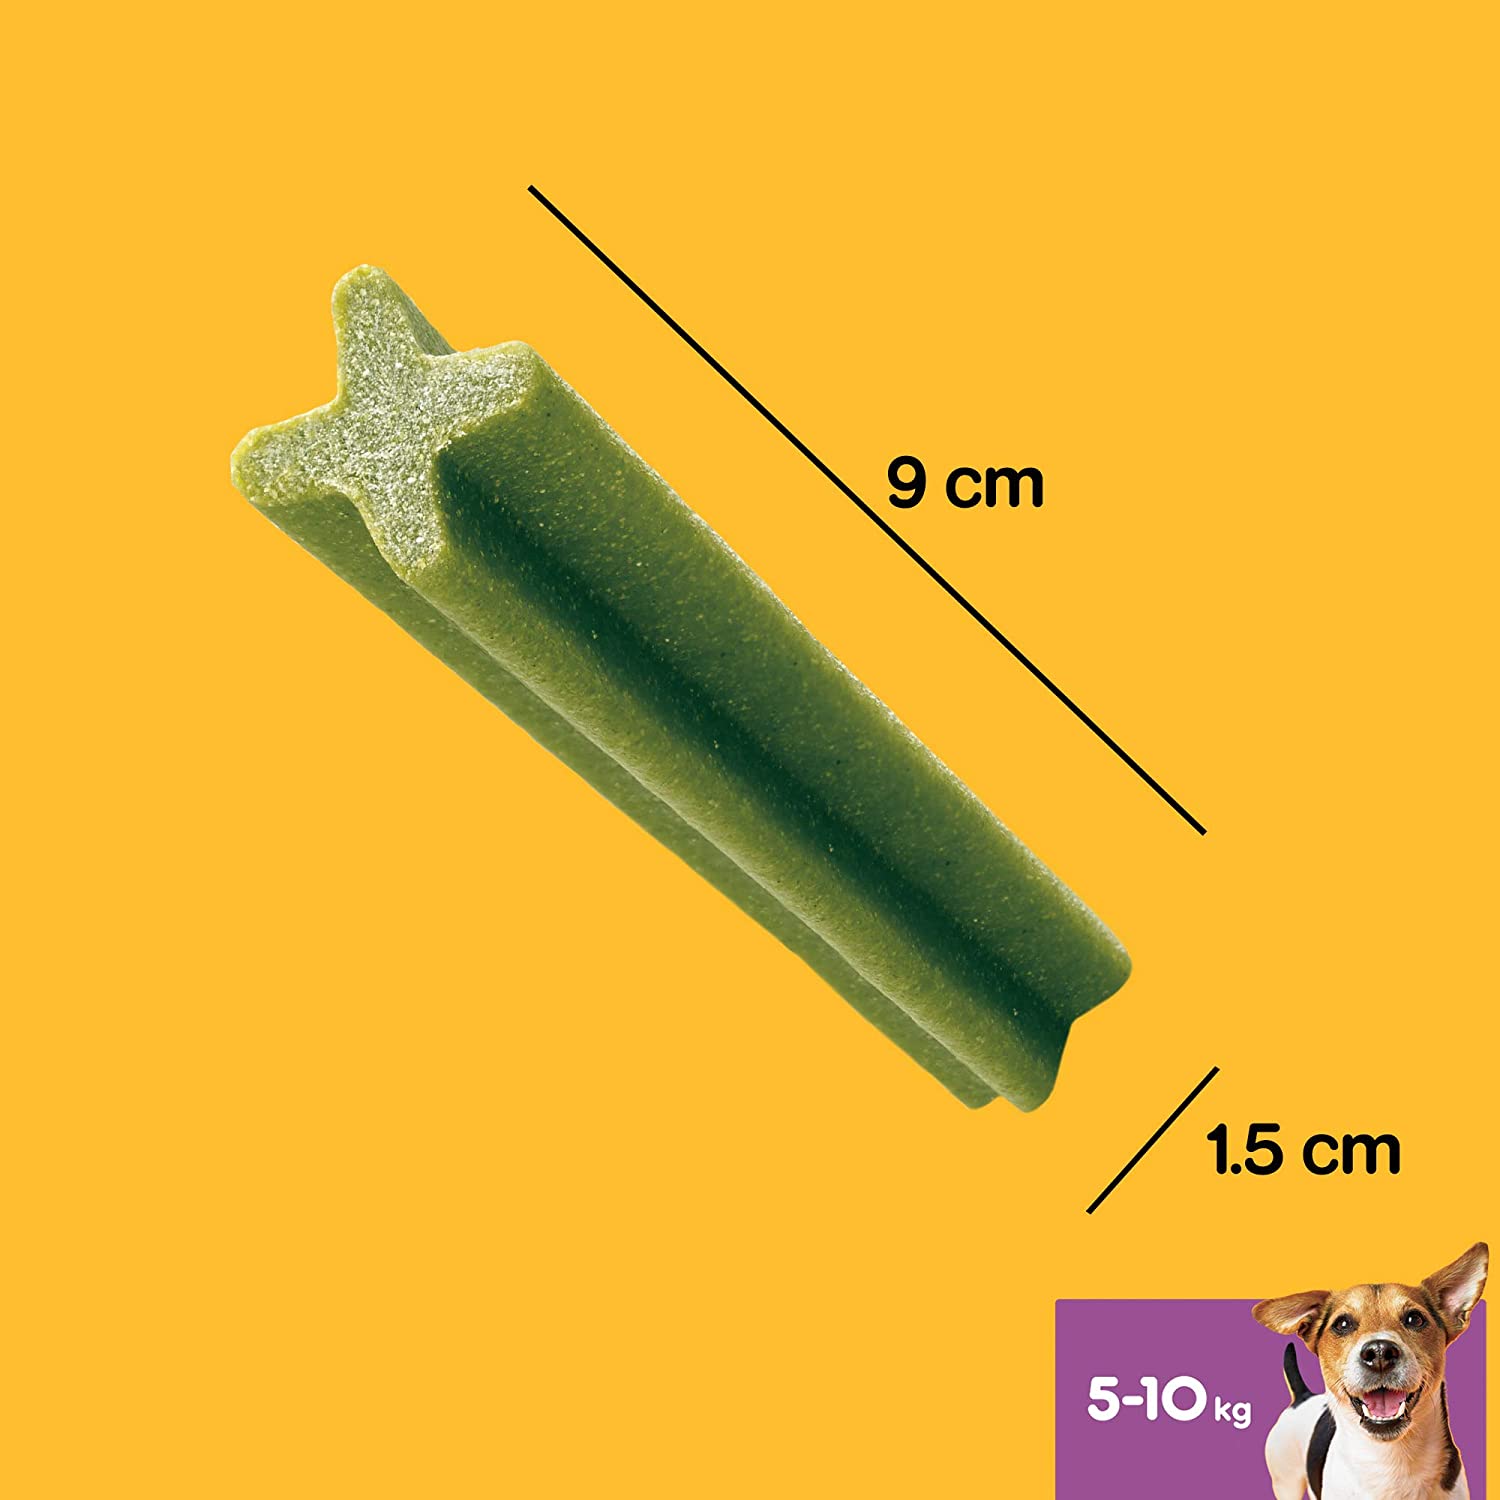  PEDIGREE Pack de 28 Dentastix Fresh de Uso Diario para la Limpieza Dental de los Perros y contra Mal Aliento, para Perros pequeños (Pack de 4) 